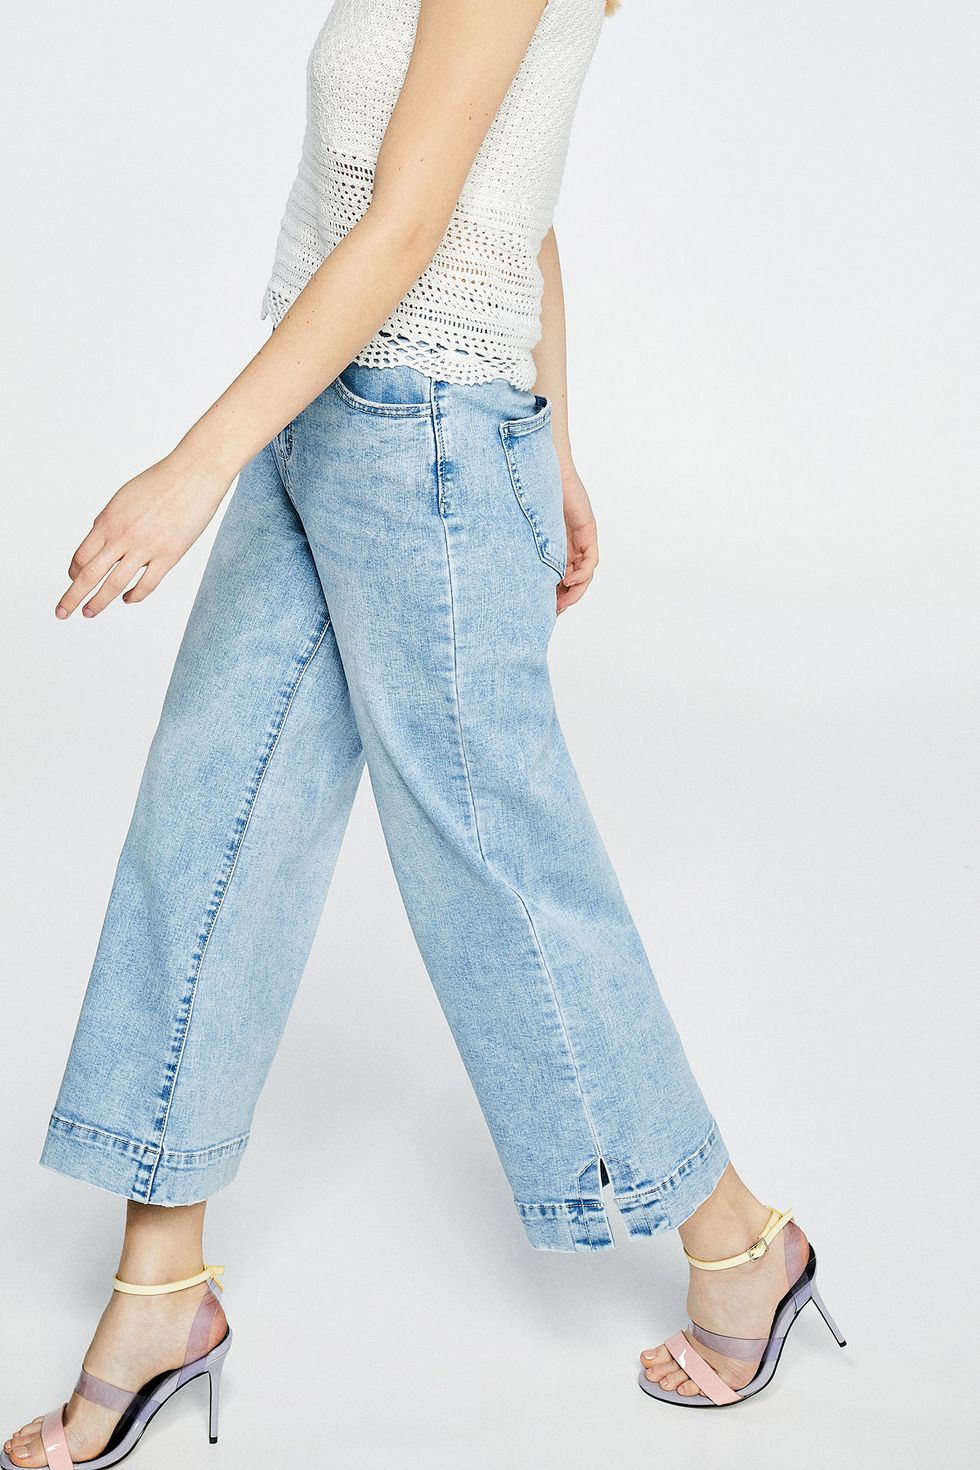 Estos de Sfera son perfectos para cualquier silueta y cualquier del día - Sfera tiene los jeans ideales para cualquier mujer